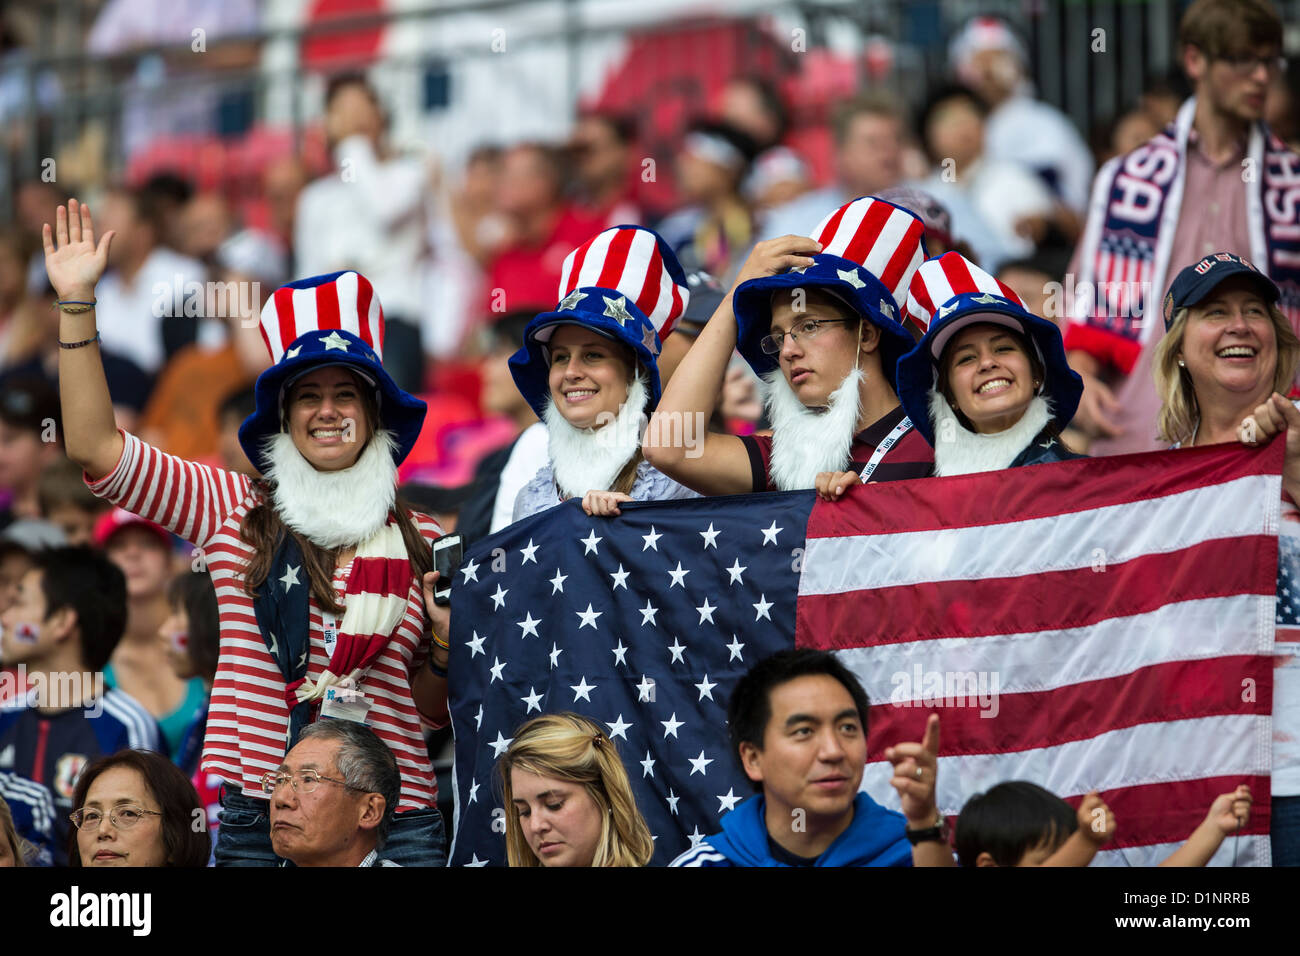 USA fans watch USA remporte l'or sur le Japon en femmes Football (soccer) aux Jeux Olympiques d'été, Londres 2012 Banque D'Images